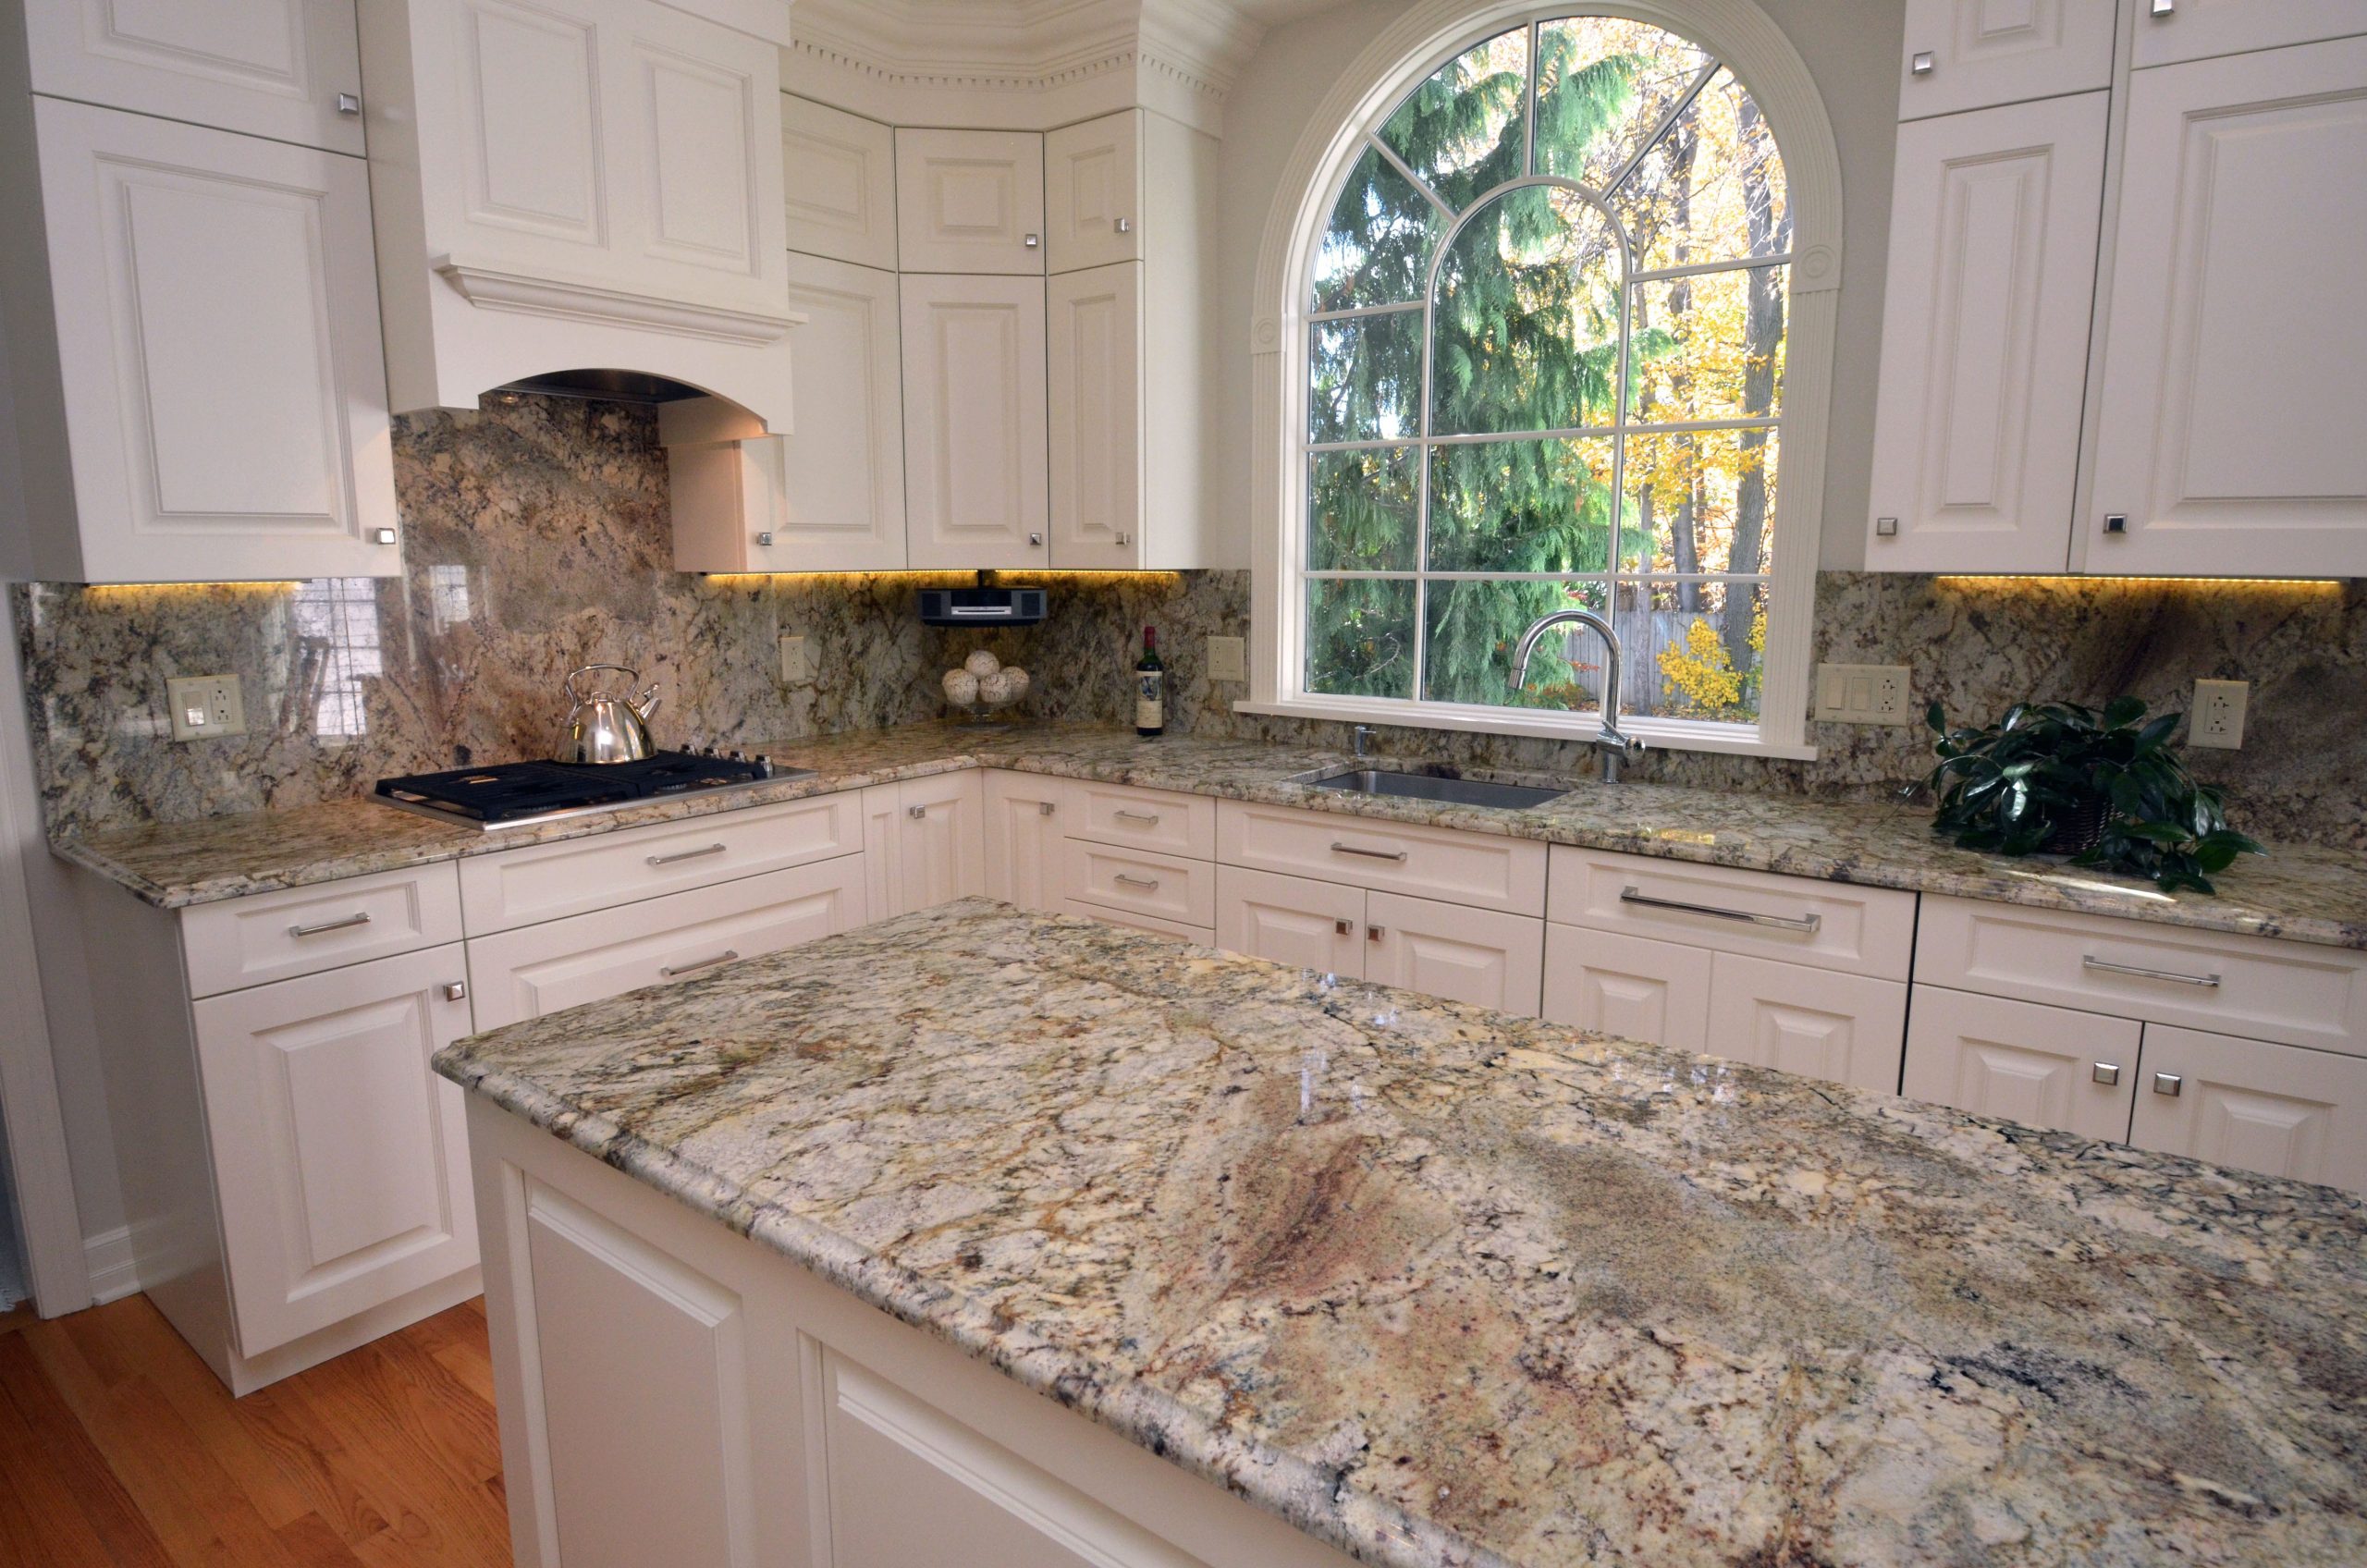 granite countertop backsplash height
 Granite Kitchen Countertops w/ Full Height Backsplash ..